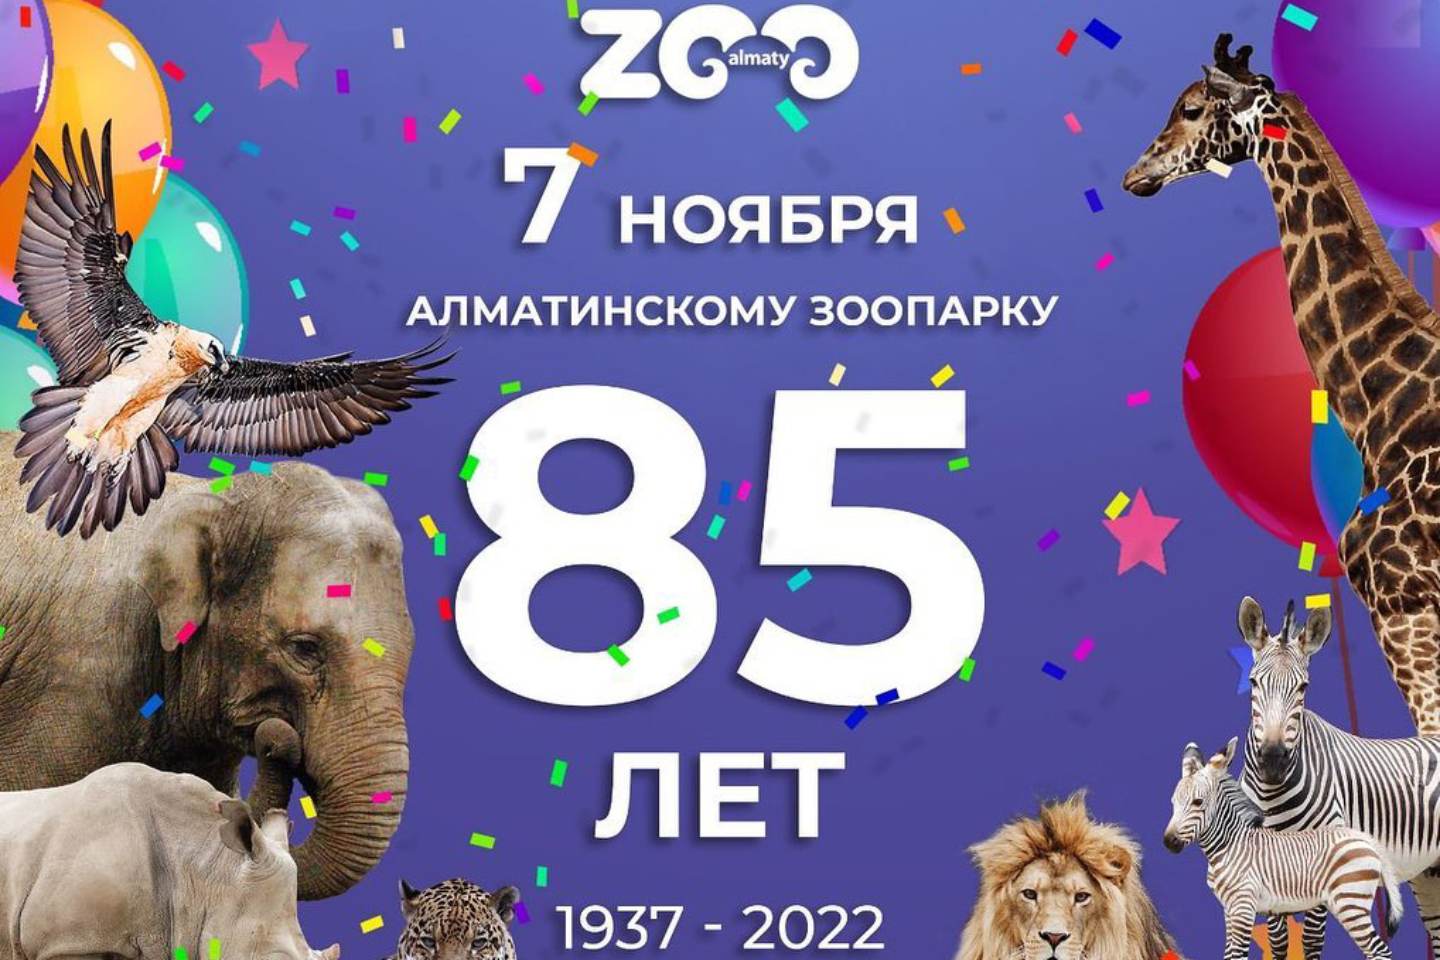 Новости мира / Интересные новости / Зоопарк Алматы отмечает юбилей